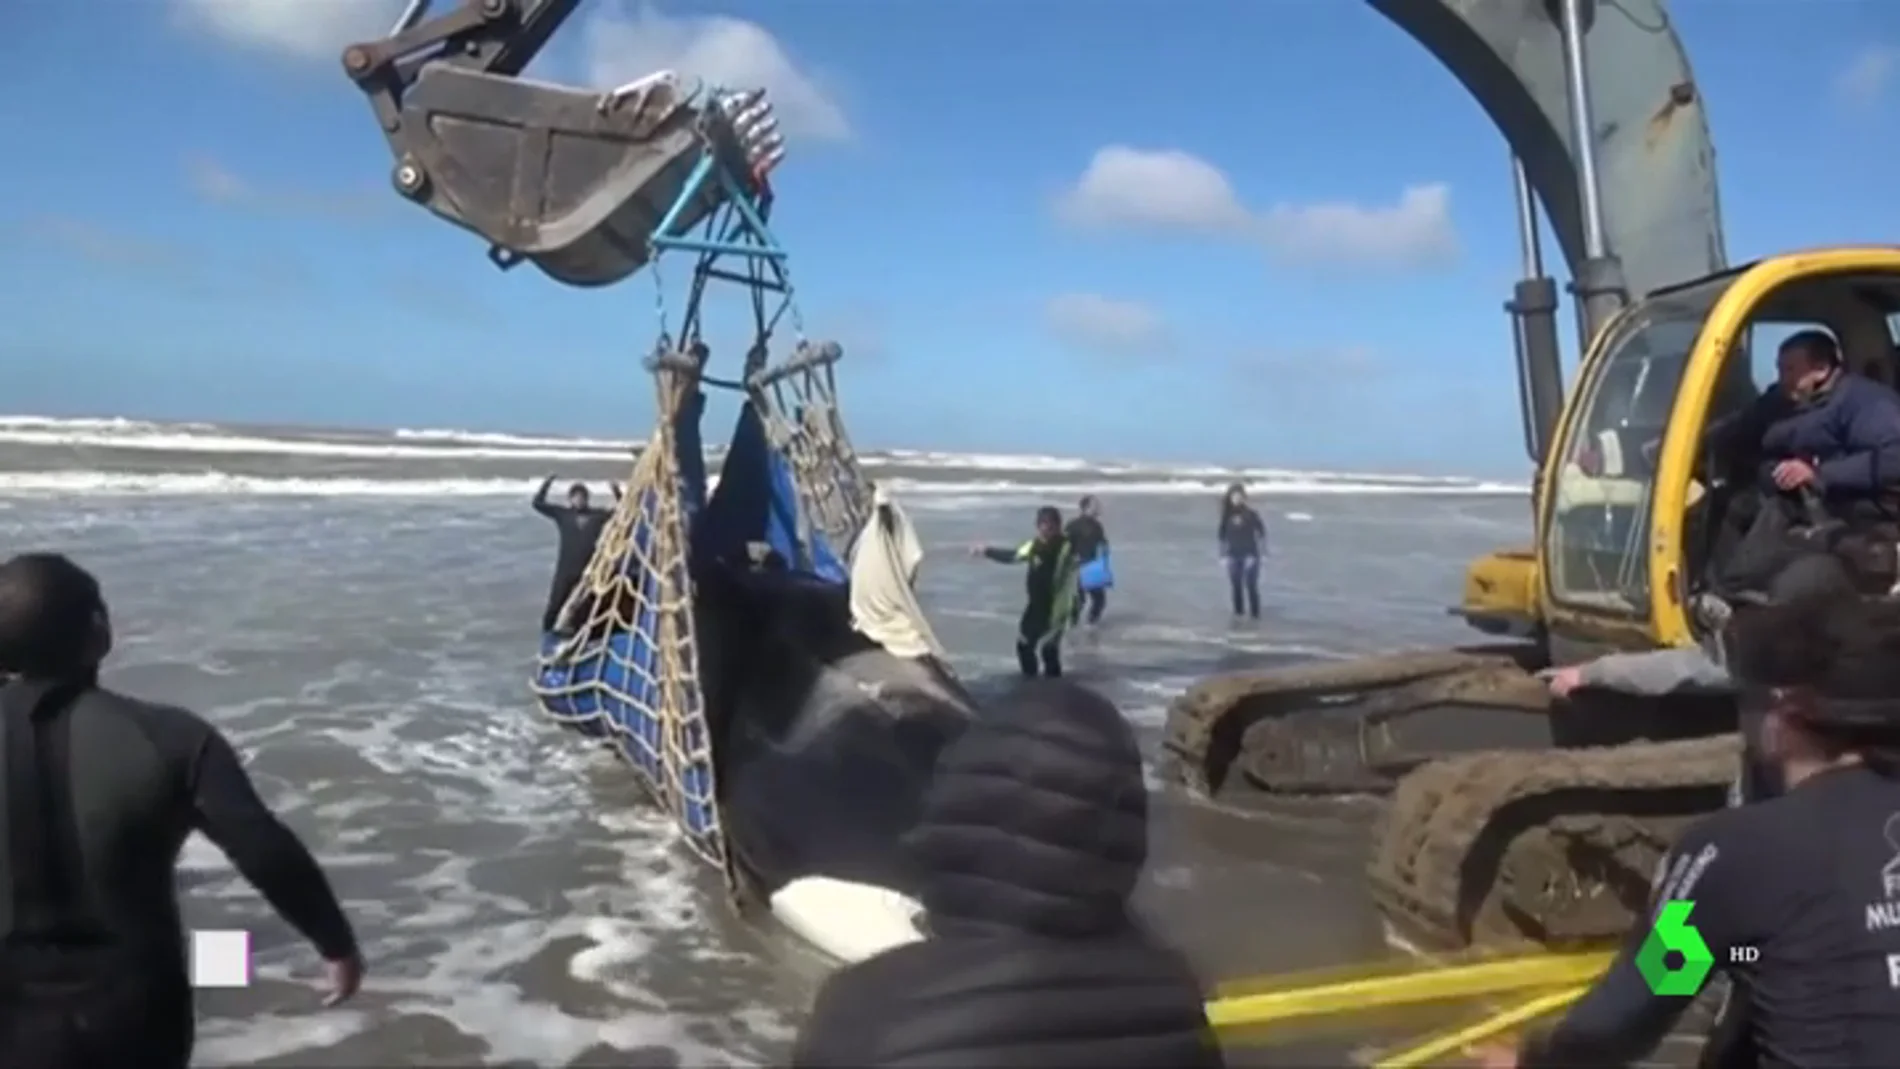 En tres días han aparecido cinco orcas varadas en la costa atlántica argentina